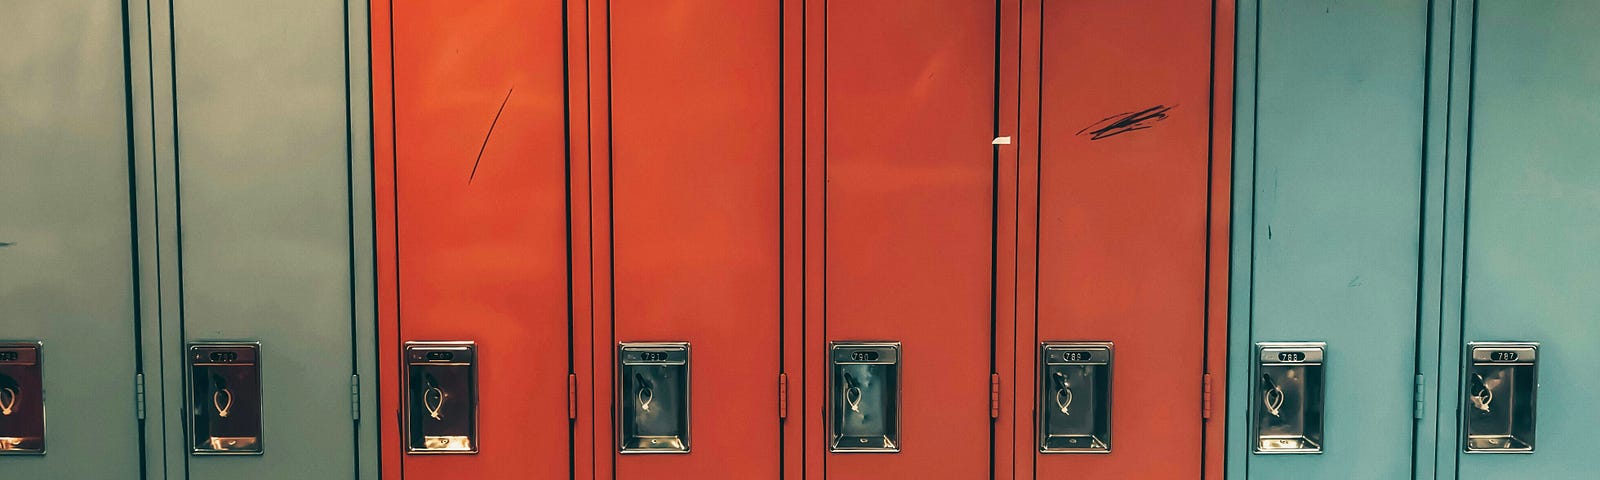 A set of school lockers